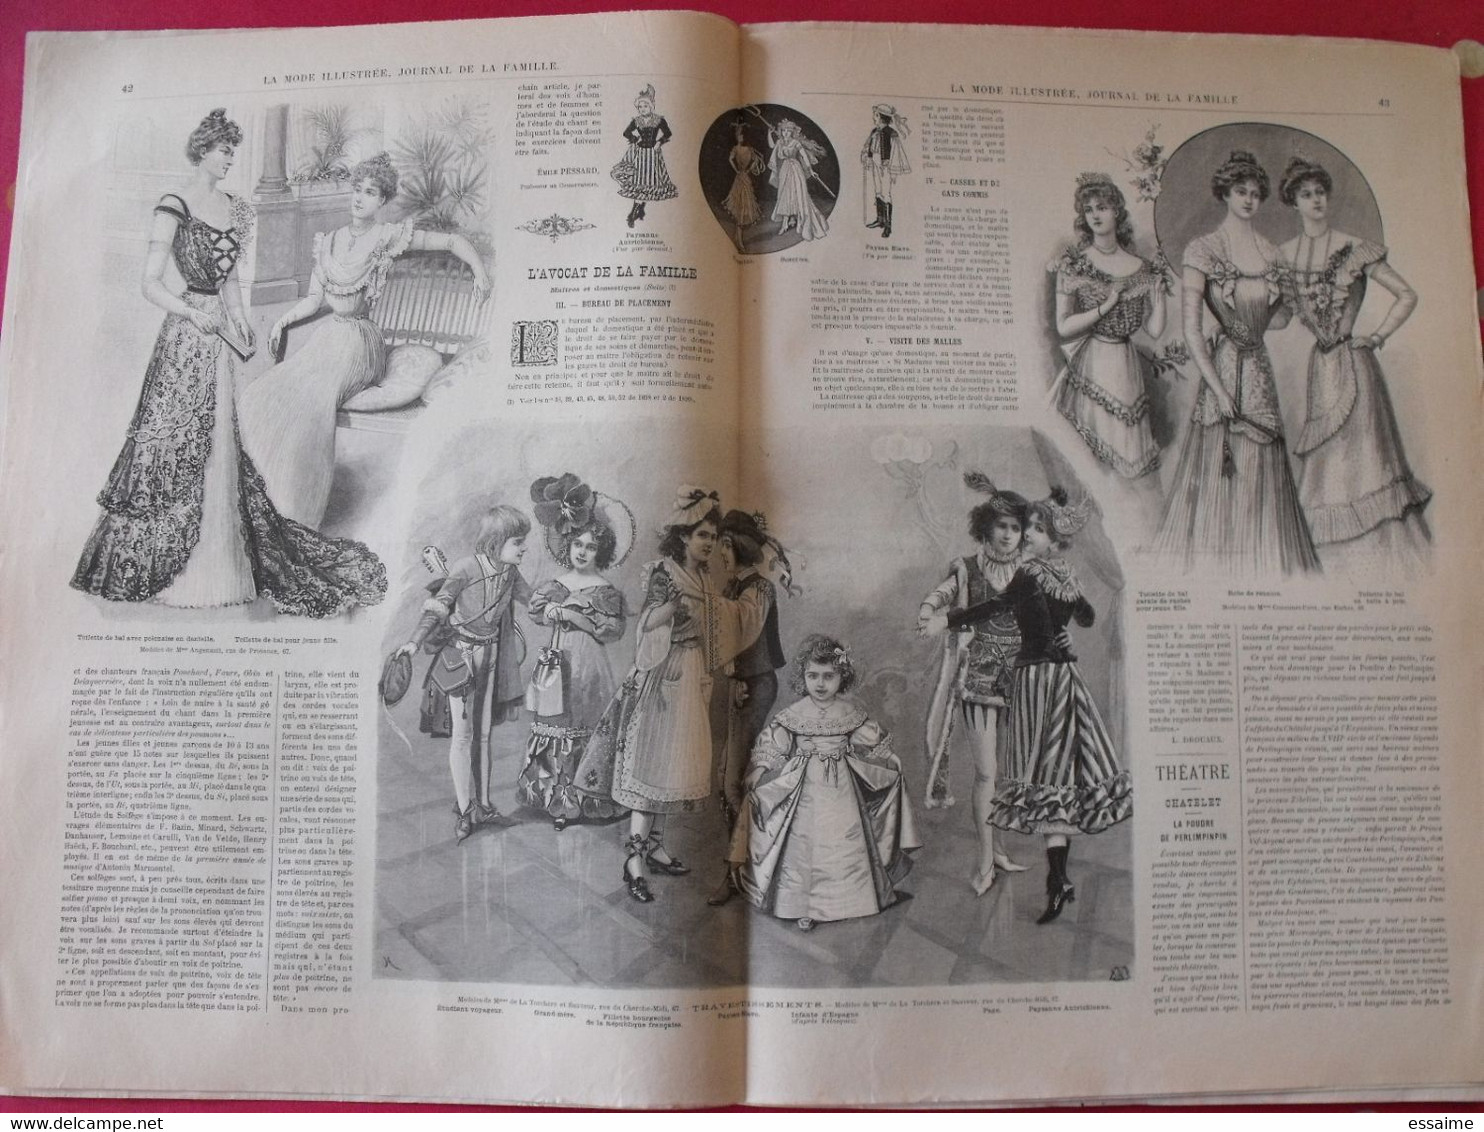 4 revues la mode illustrée, journal de la famille.  n° 1,3,4,5 de 1899. couverture en couleur. jolies gravures